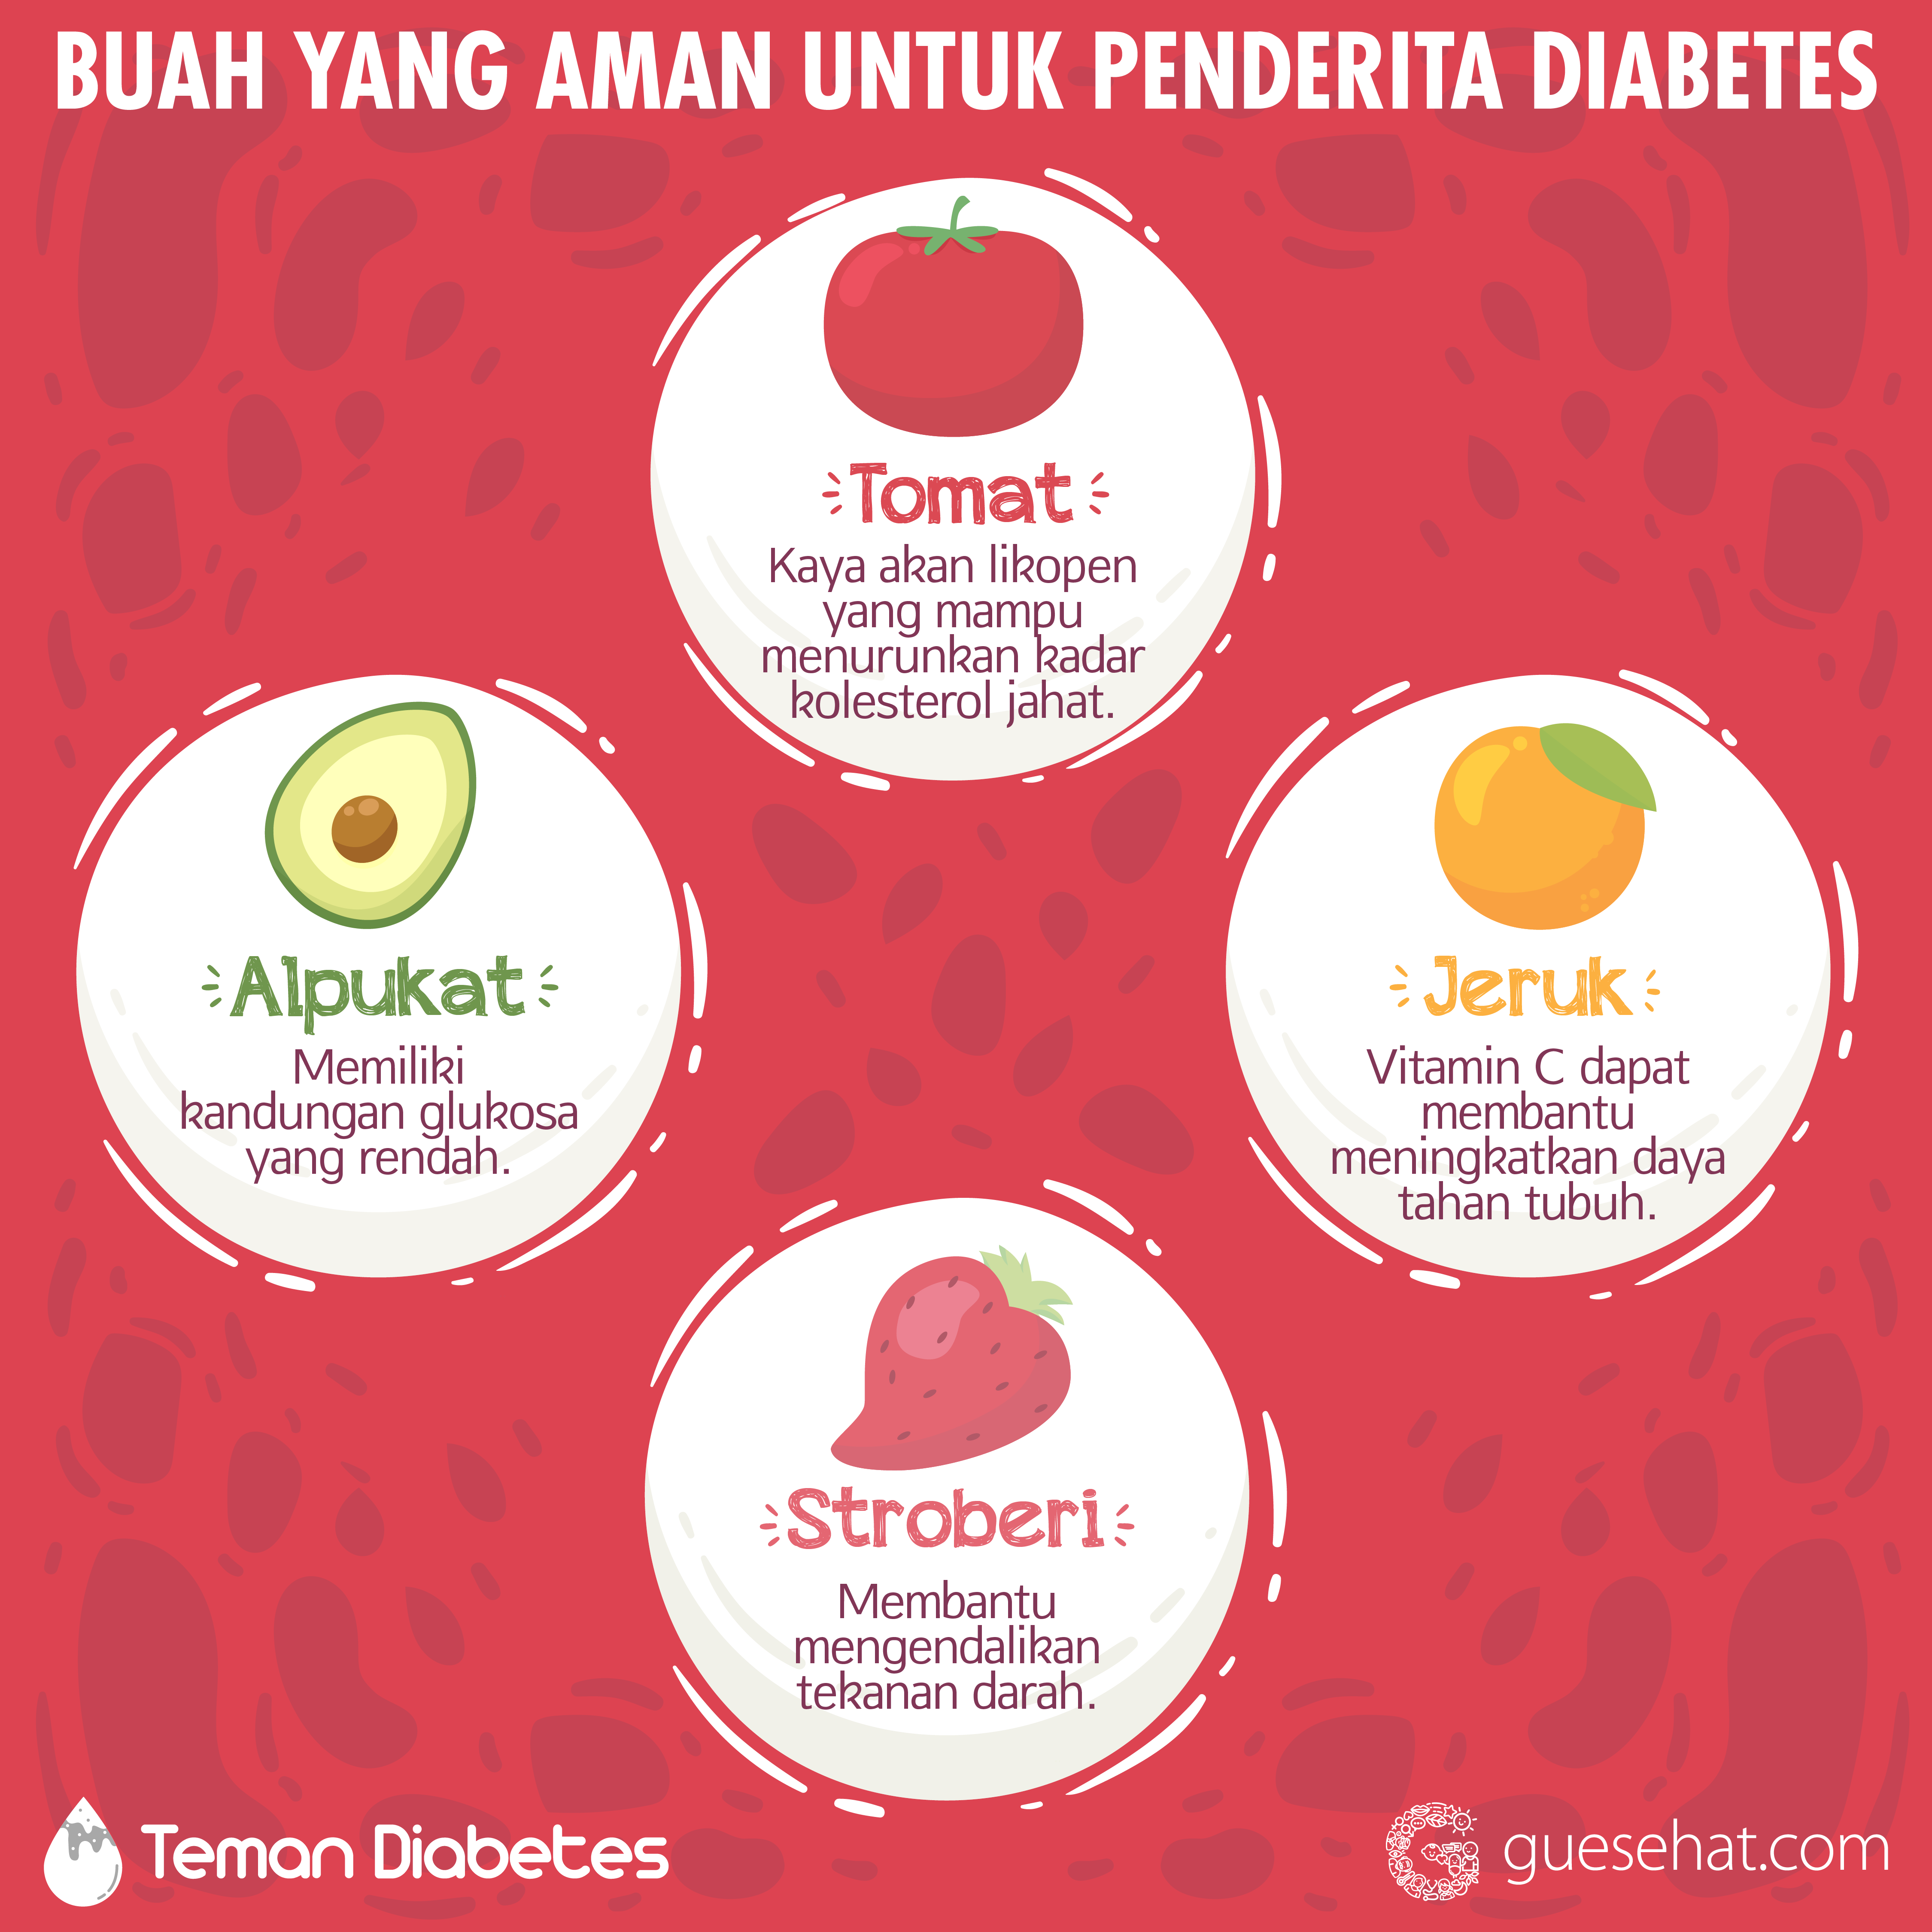 Voće koje je sigurno za dijabetes